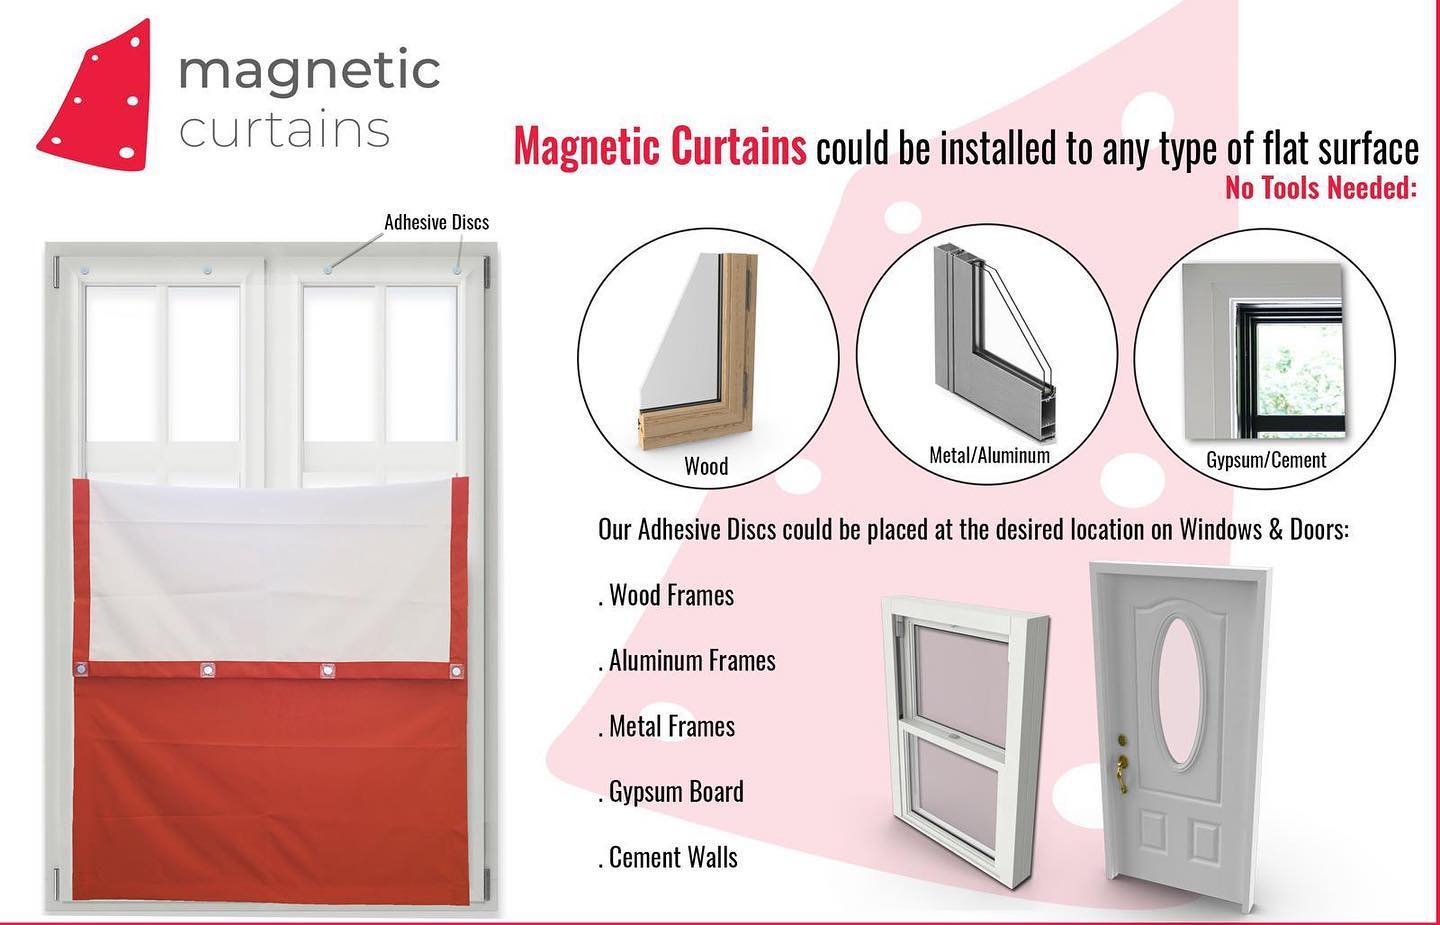 Tlaks磁気カーテン-オーダーメイドカスタム-断熱ブラックアウトカーテン-工具の取り付けなし-米国で設計および製造